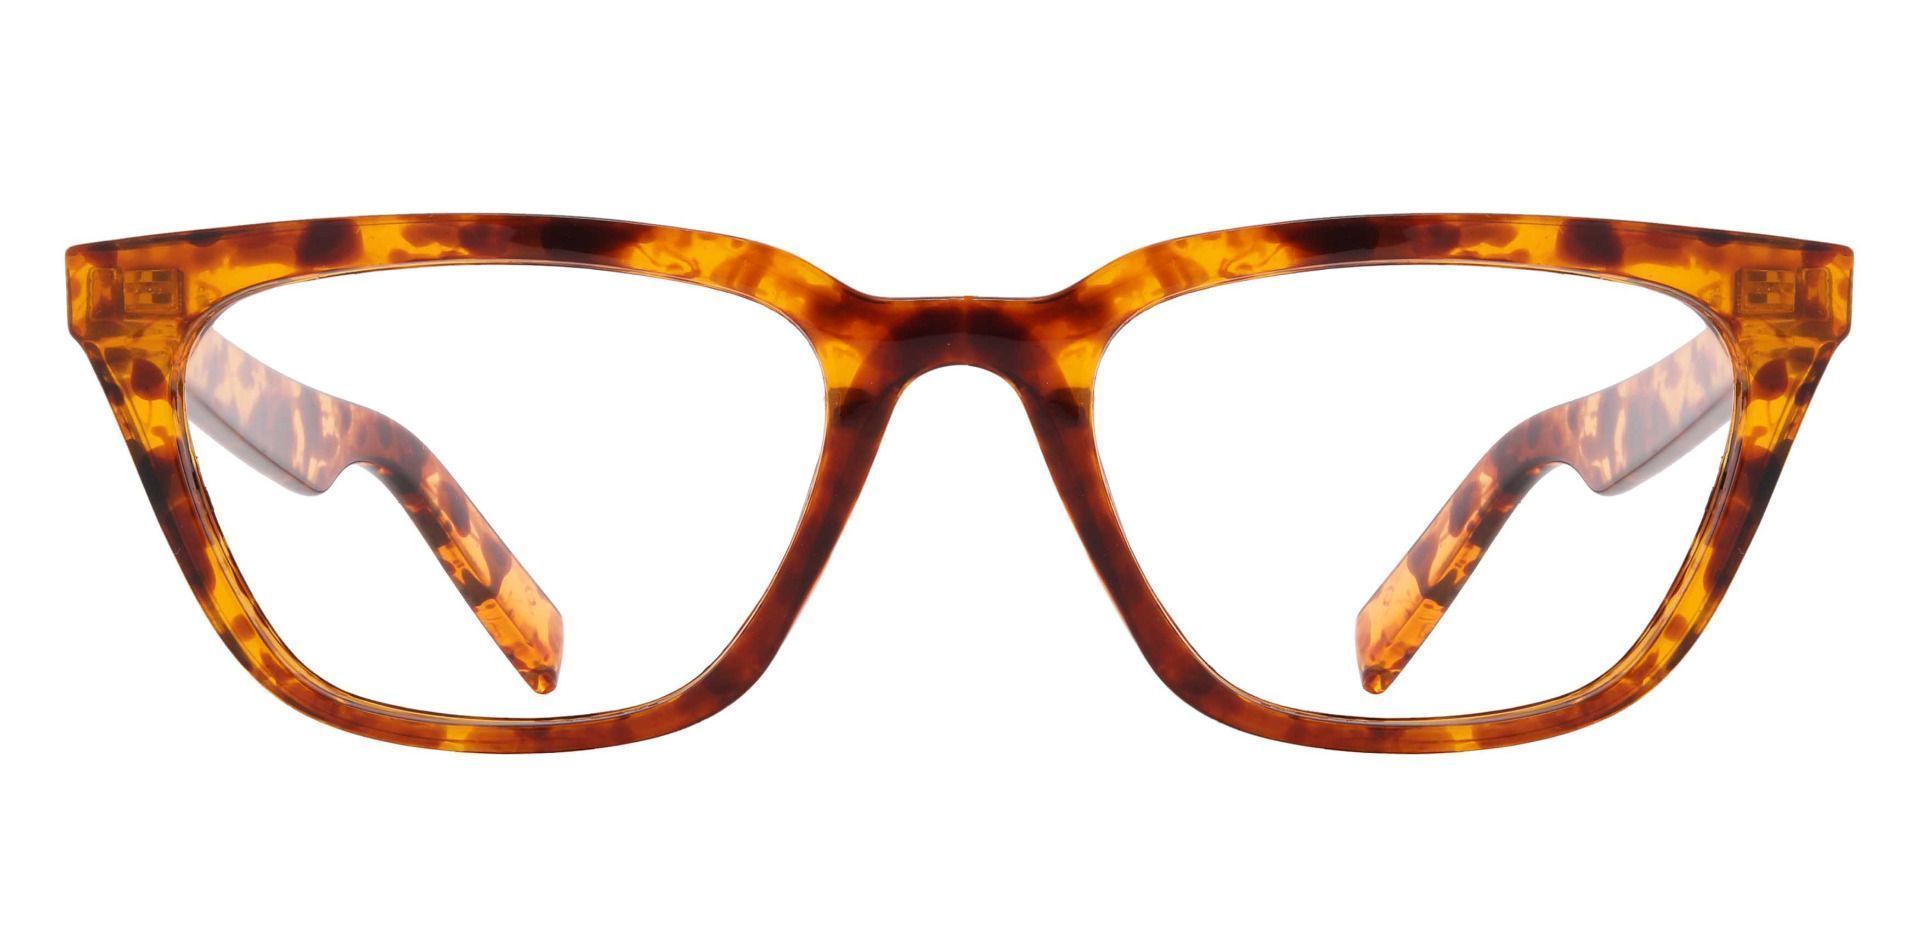 Benton Geometric Eyeglasses Frame - Tortoise | Men's Eyeglasses | Payne ...